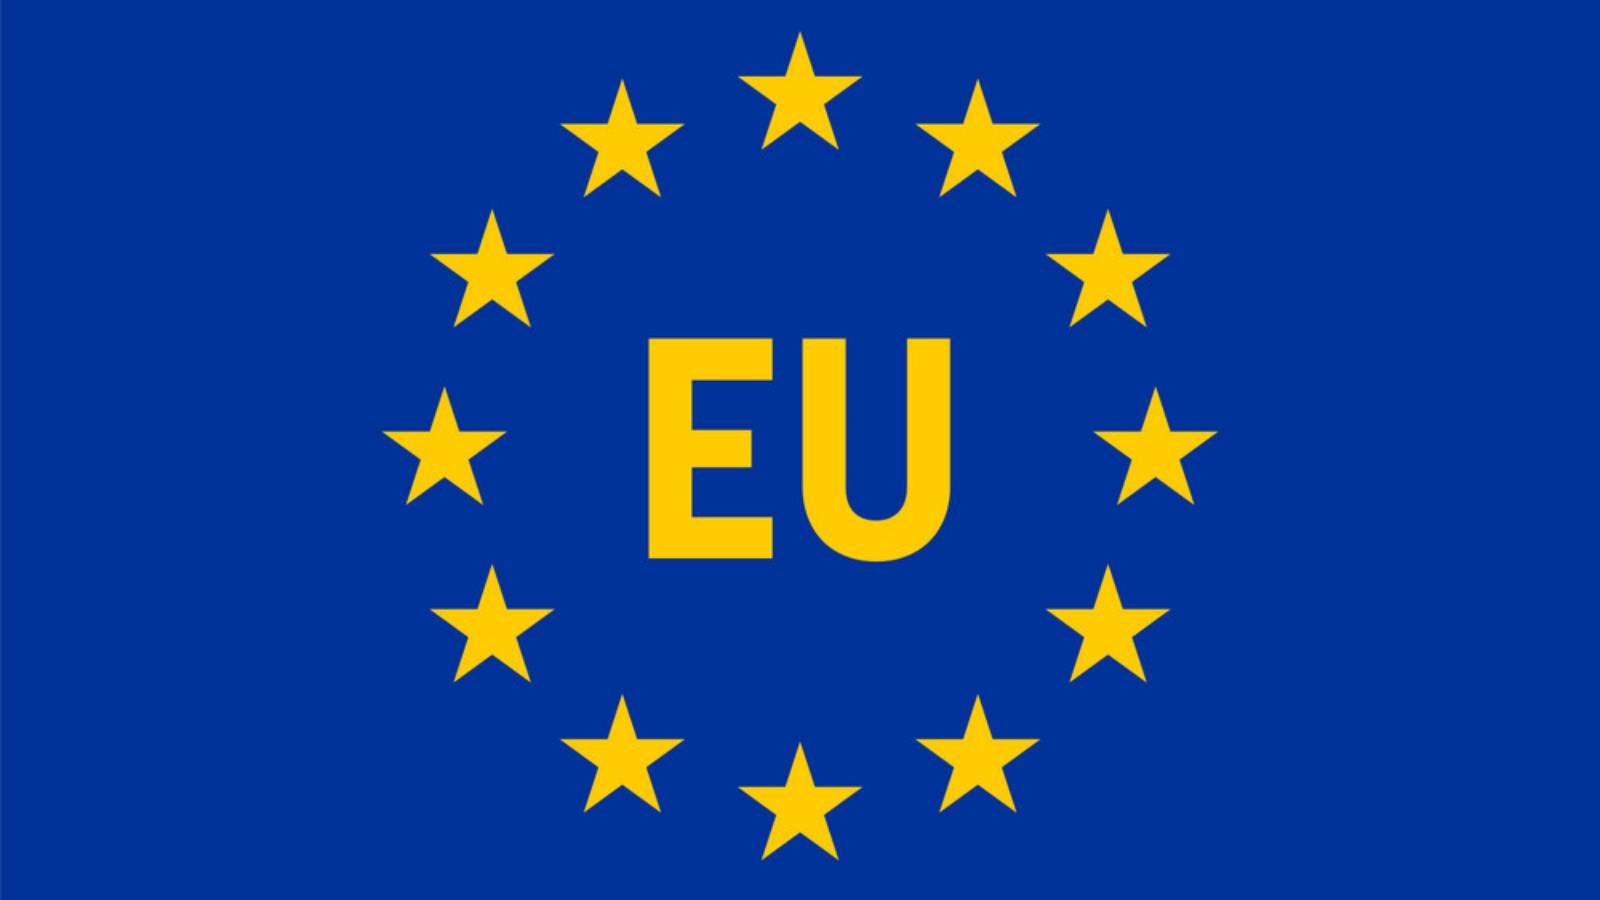 La révolution Charger a commencé dans l’Union européenne en 2022